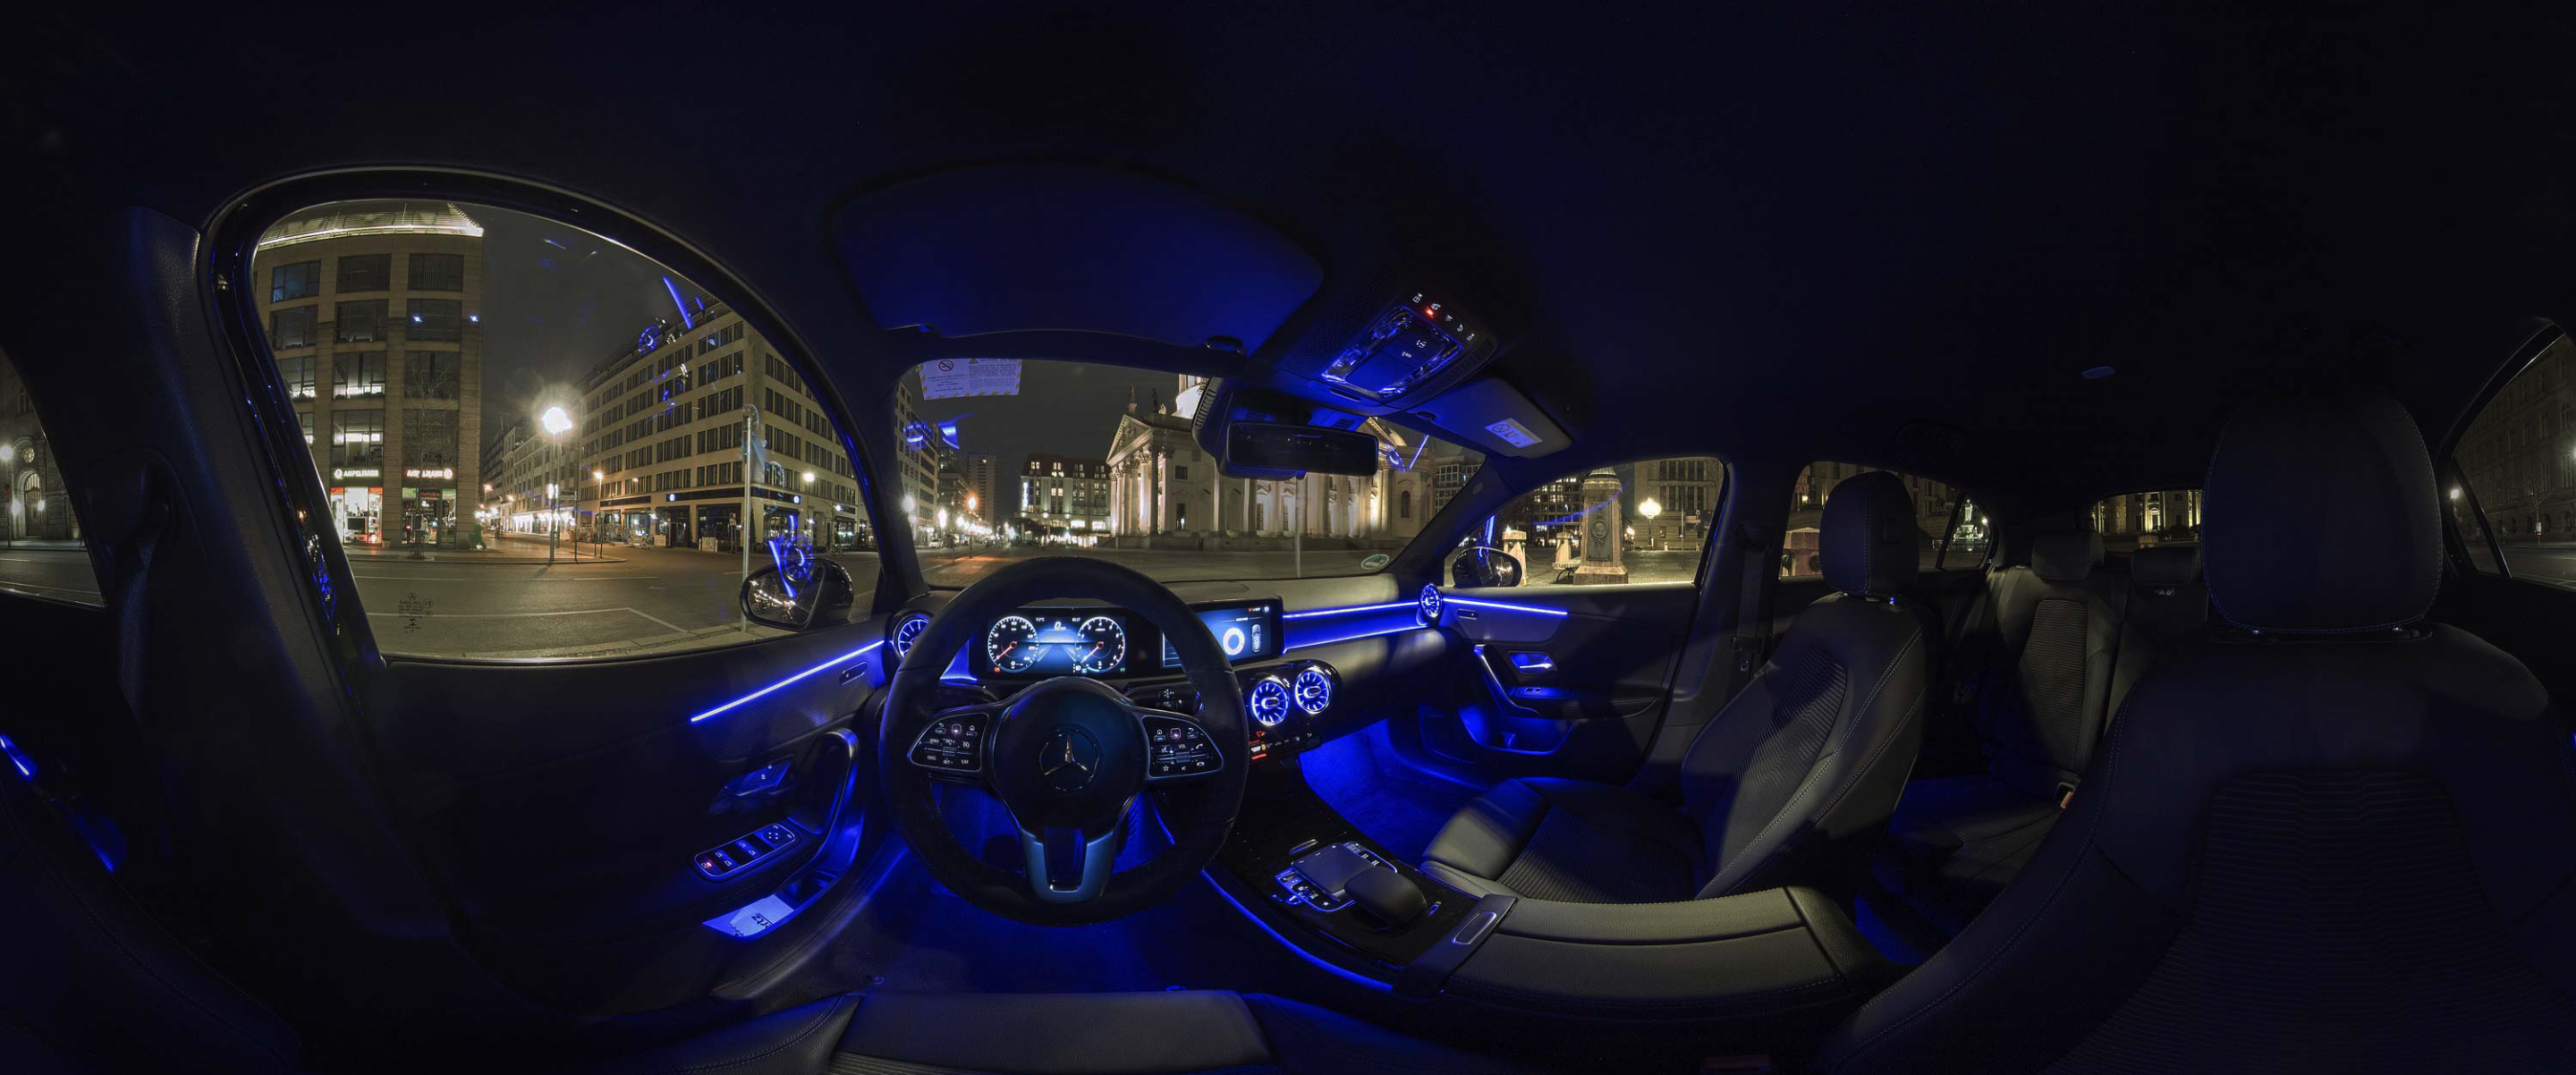 360 Grad Ansicht auf die Innenansicht eines Autos